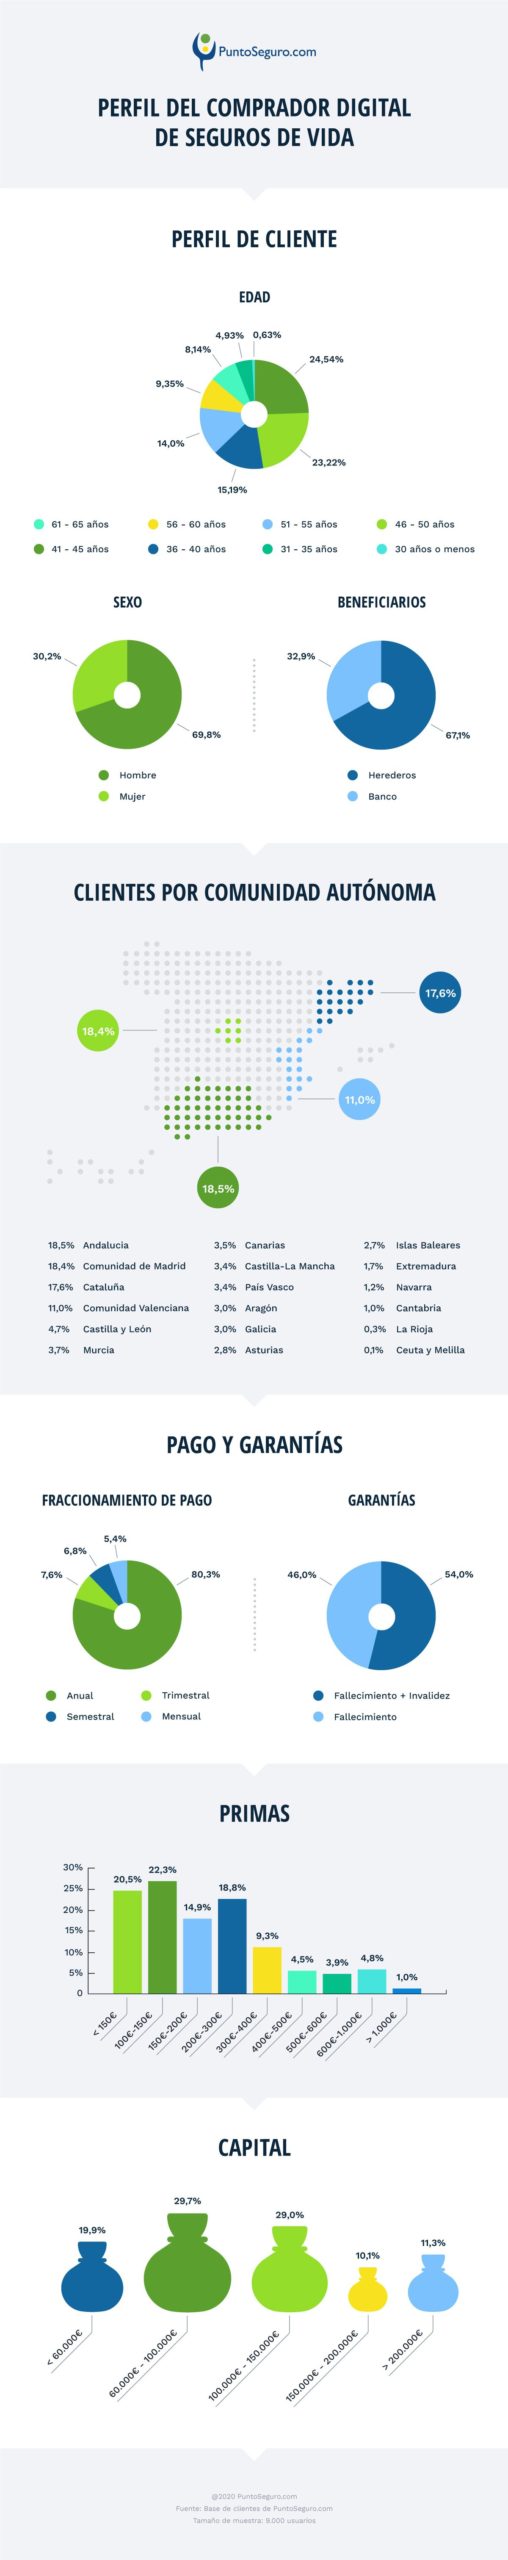 PuntoSeguro.com publica la infografía sobre el comparador digital de seguros de vida